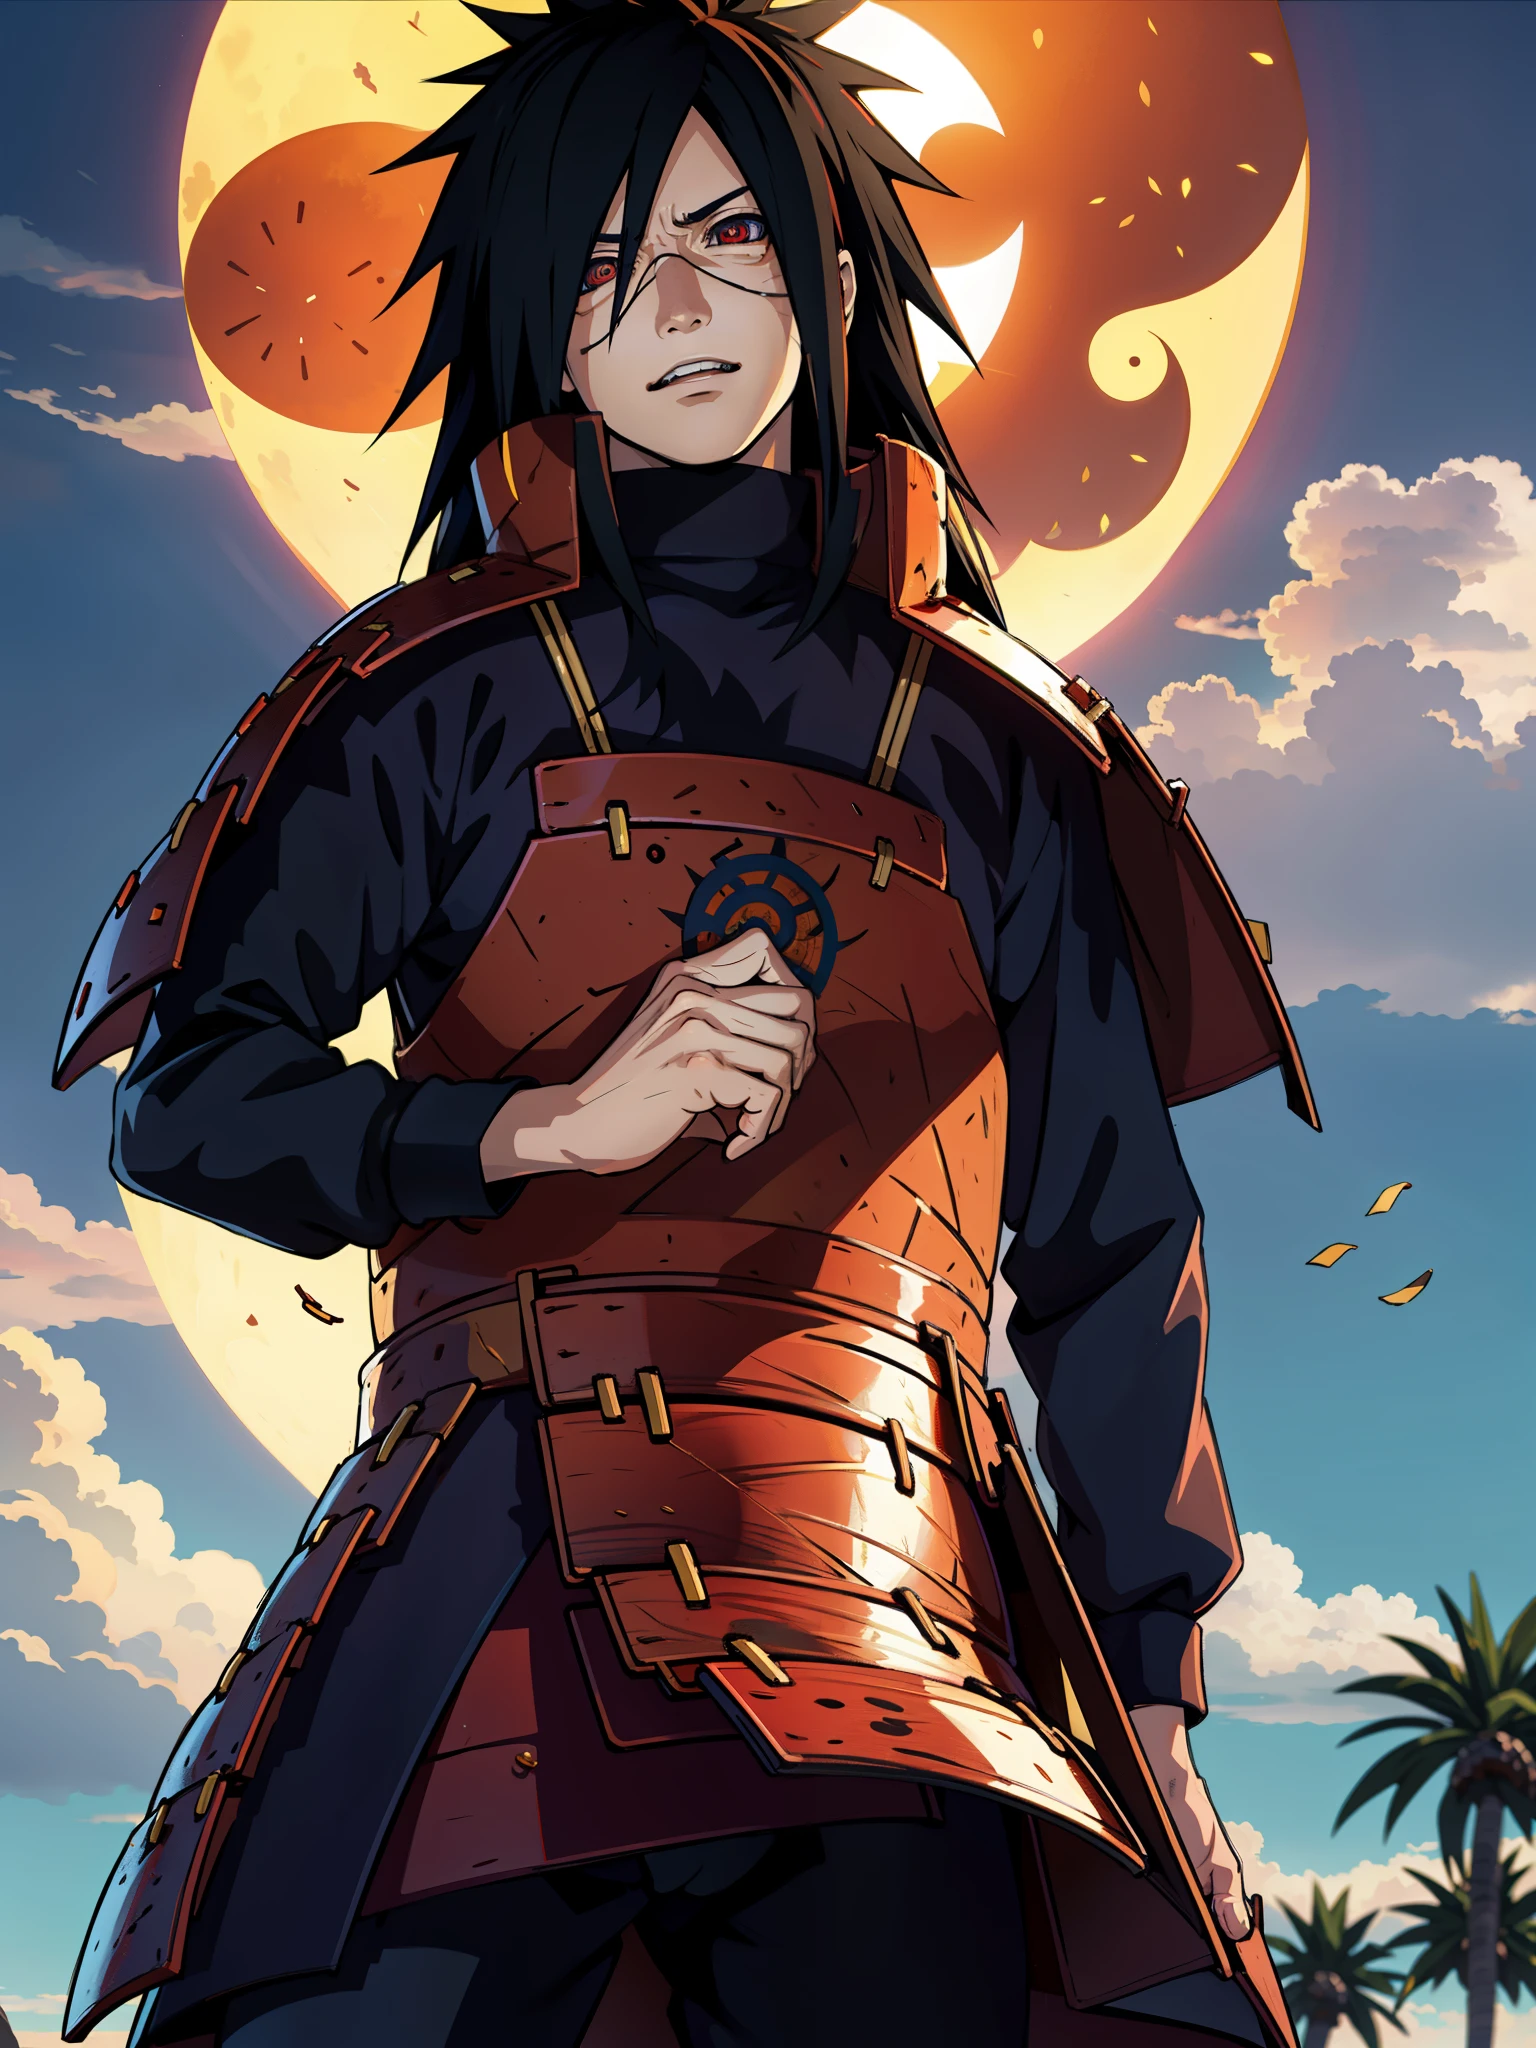 1mâle, Uchiha Madara de l&#39;anime Naruto, avec de longs cheveux noirs et des yeux rouges perçants. Il a une apparence belle et confiante, avec un sourire captivant sur le visage.

Il porte un ensemble de vêtements rouges finement détaillés., mettant en valeur le savoir-faire de haute qualité et la texture réaliste. Le tissu coule gracieusement, accentuant chacun de ses mouvements.

La scène se déroule dans un arrière-plan animé de ville balnéaire, avec le soleil qui brille de mille feux et jette une lueur chaleureuse sur Madara. La ville grouille de vie, avec des palmiers se balançant doucement dans la brise et des gens profitant de leur temps à la plage. La mer bleu clair s’étend à perte de vue, créer une ambiance tranquille et sereine.

La qualité de l&#39;image est de la plus haute importance, en mettant l&#39;accent sur l&#39;obtention de la meilleure résolution possible. Les détails sont ultra-détaillés, capturer chaque mèche de cheveux, chaque ride dans les vêtements, et chaque expression subtile sur le visage de Madara. L&#39;image se veut réaliste et photoréaliste, plonger le spectateur dans le monde de Naruto.

En termes de style artistique, l&#39;image combine l&#39;essence de l&#39;anime et des artistes conceptuels, mélangeant la nature dynamique et expressive de l&#39;anime avec l&#39;attention méticuleuse aux détails vue dans l&#39;art conceptuel. La palette de couleurs globale est vibrante et vive, avec une touche de chaleur pour souligner la présence de Madara.

L&#39;éclairage de l&#39;image accentue les traits de Madara, projeter des ombres qui ajoutent de la profondeur et de la dimension à son visage. La lumière du soleil le baigne dans une douce, Lueur dorée, améliorant encore son apparence frappante.

Dans l&#39;ensemble, l&#39;invite vise à représenter Uchiha Madara d&#39;une manière réaliste et captivante, mettant en valeur ses caractéristiques emblématiques et sa personnalité. Il cherche à créer une image époustouflante qui capture l&#39;essence de la série Naruto tout en mettant en valeur le talent de l&#39;artiste..